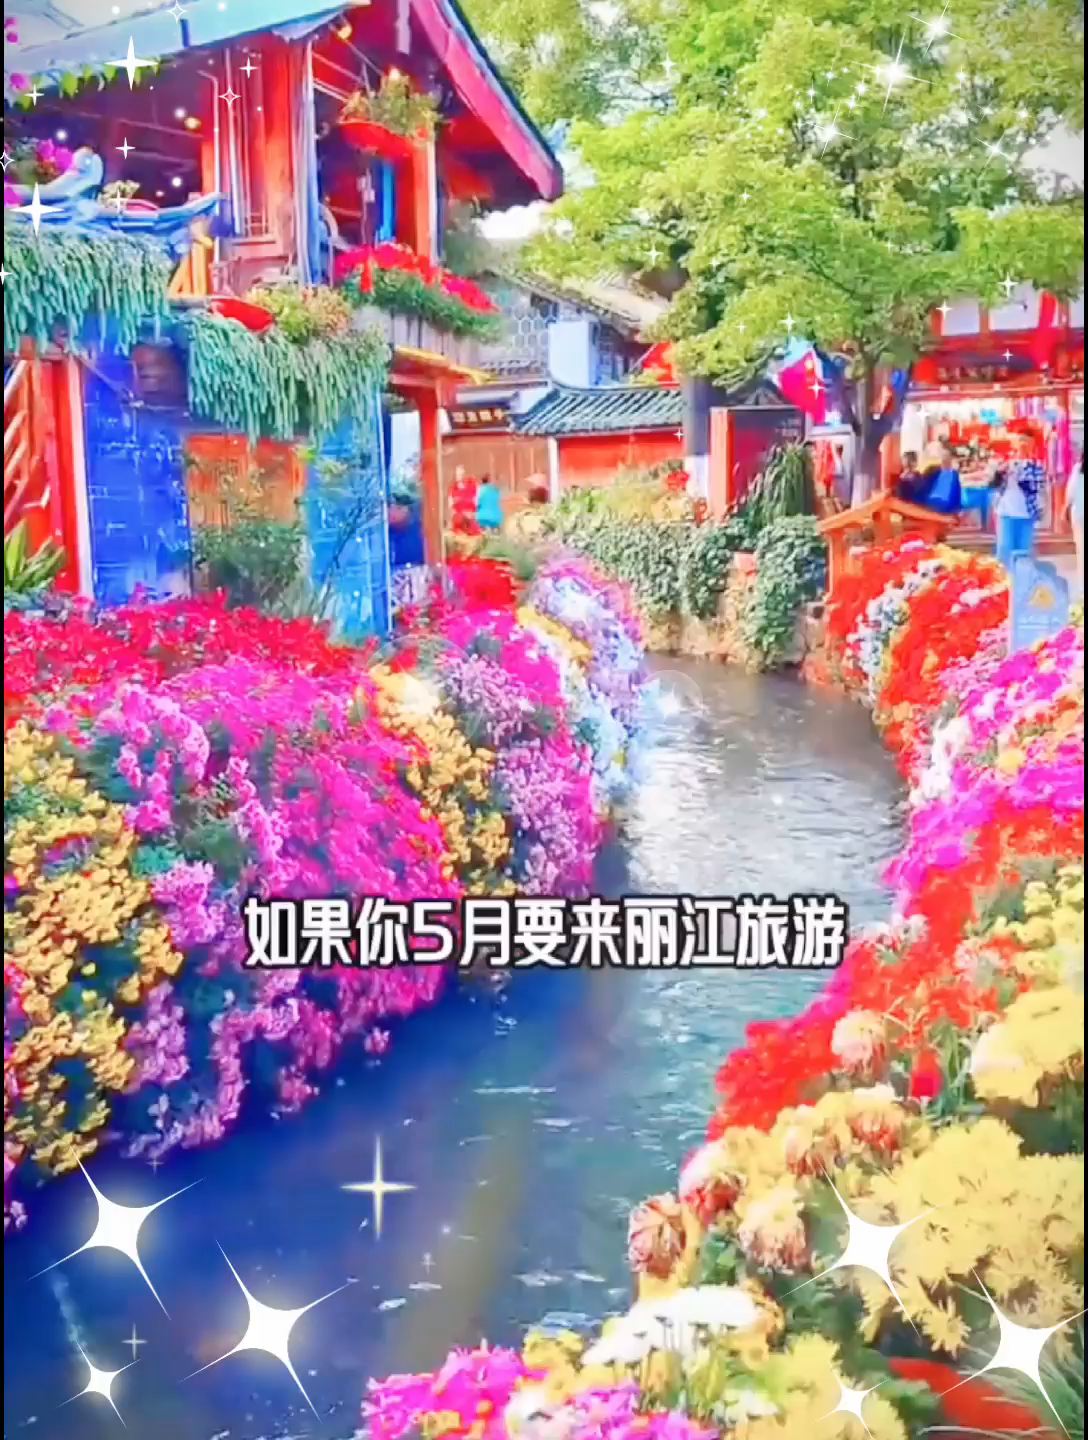 如果你五月要来丽江旅游，这篇防踩坑攻略分享给你